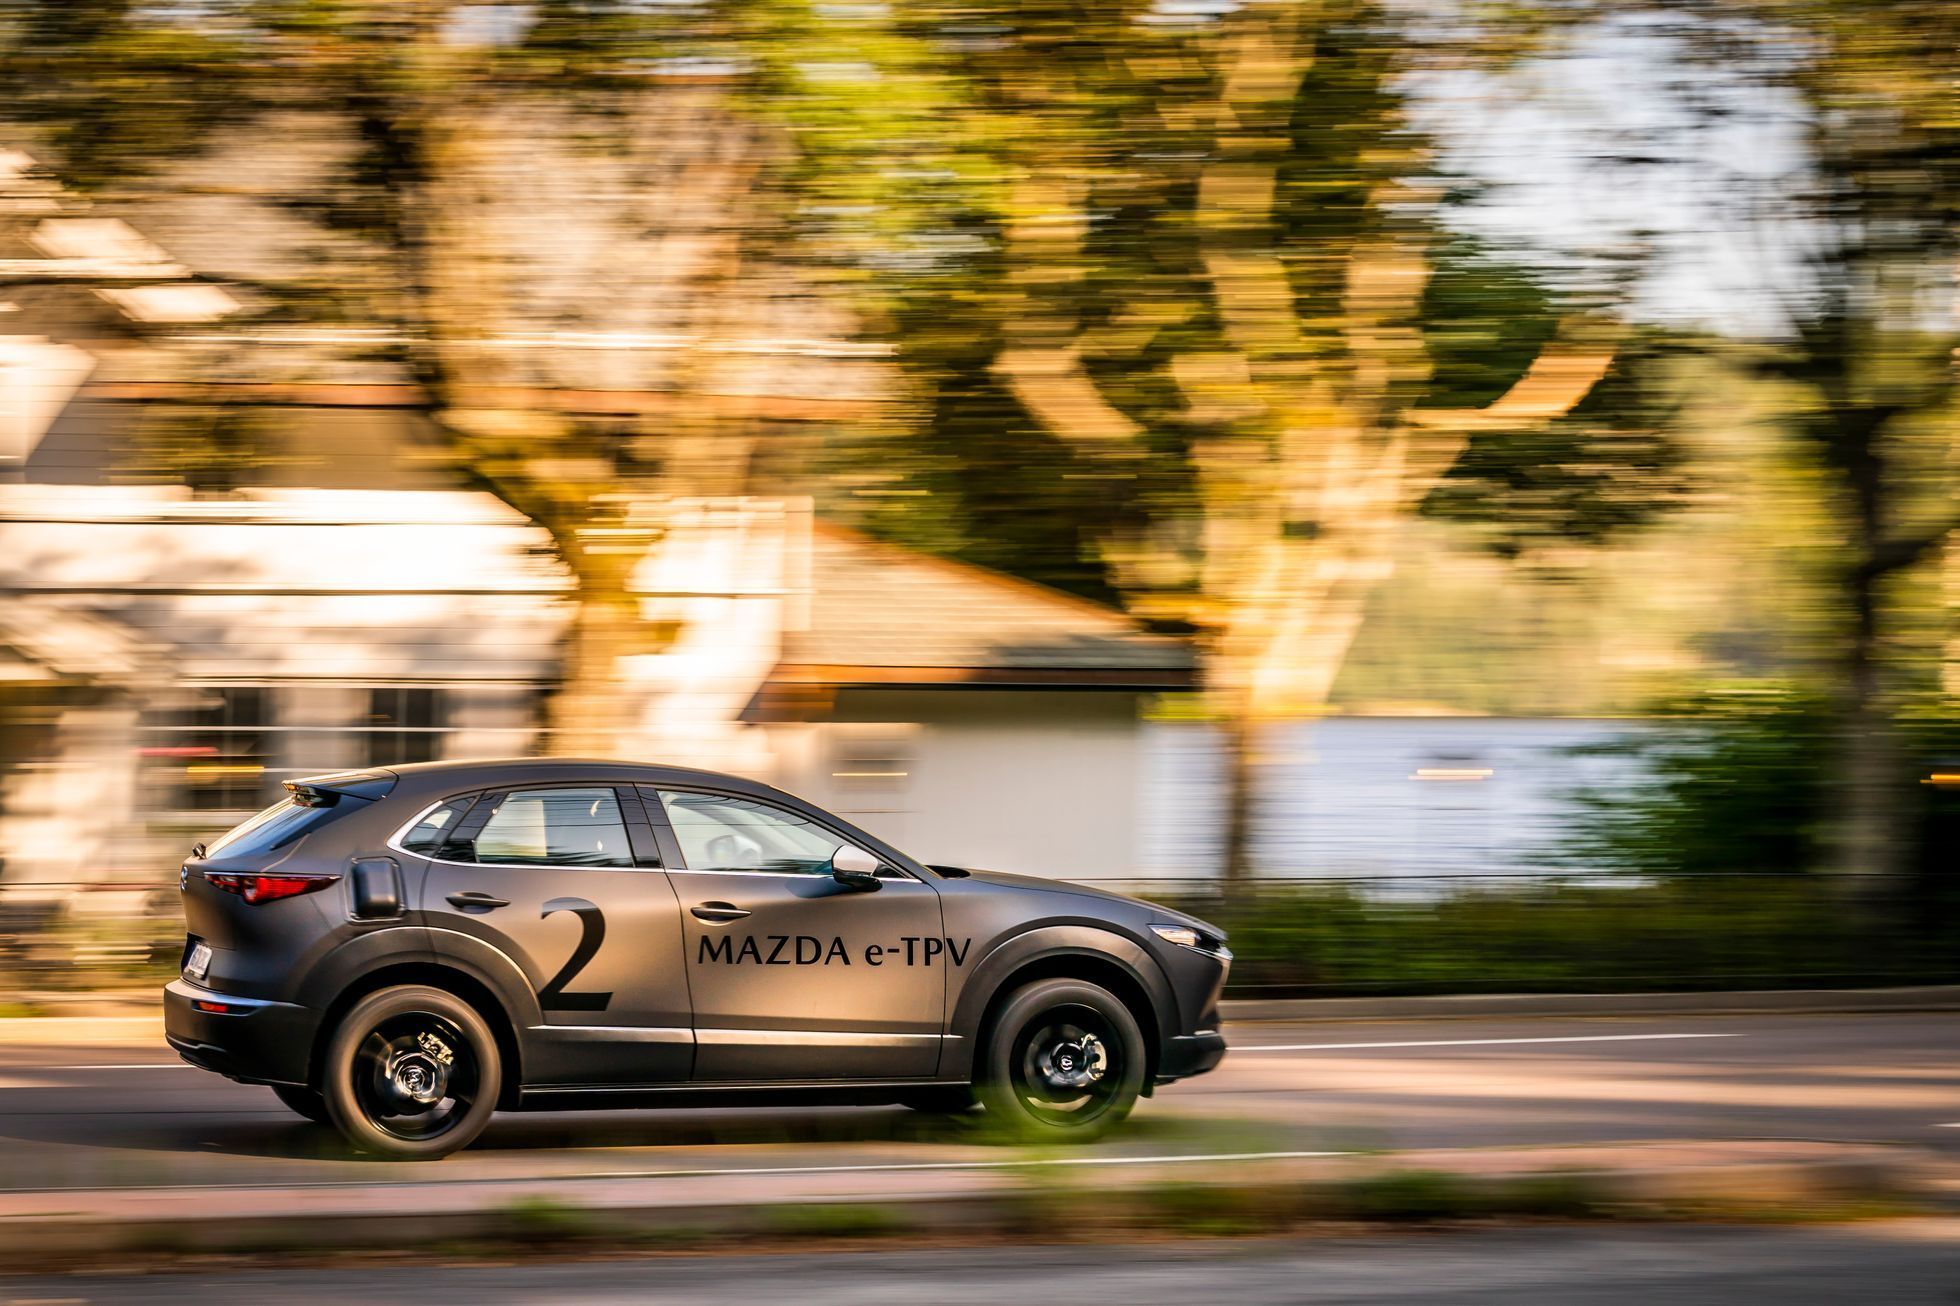 Mazda e-TPV